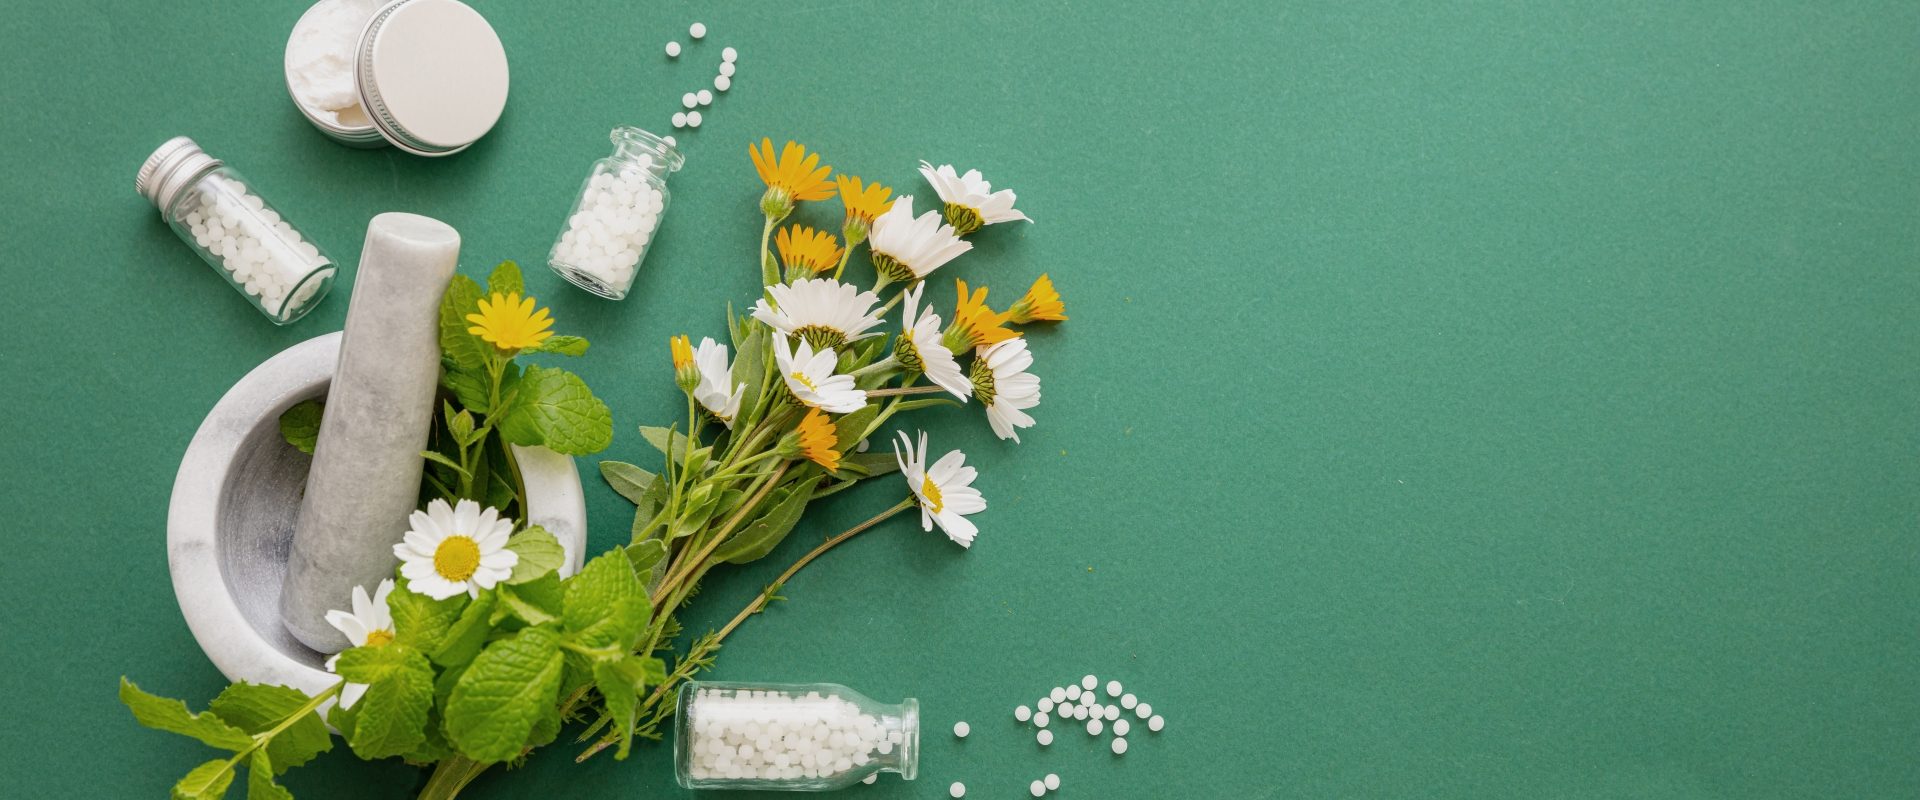 Actaea racemosa - lek homeopatyczny na kobiece dolegliwości. Granulki leków homeopatycznych i bukiet kwiatów polnych na zielonym tle.